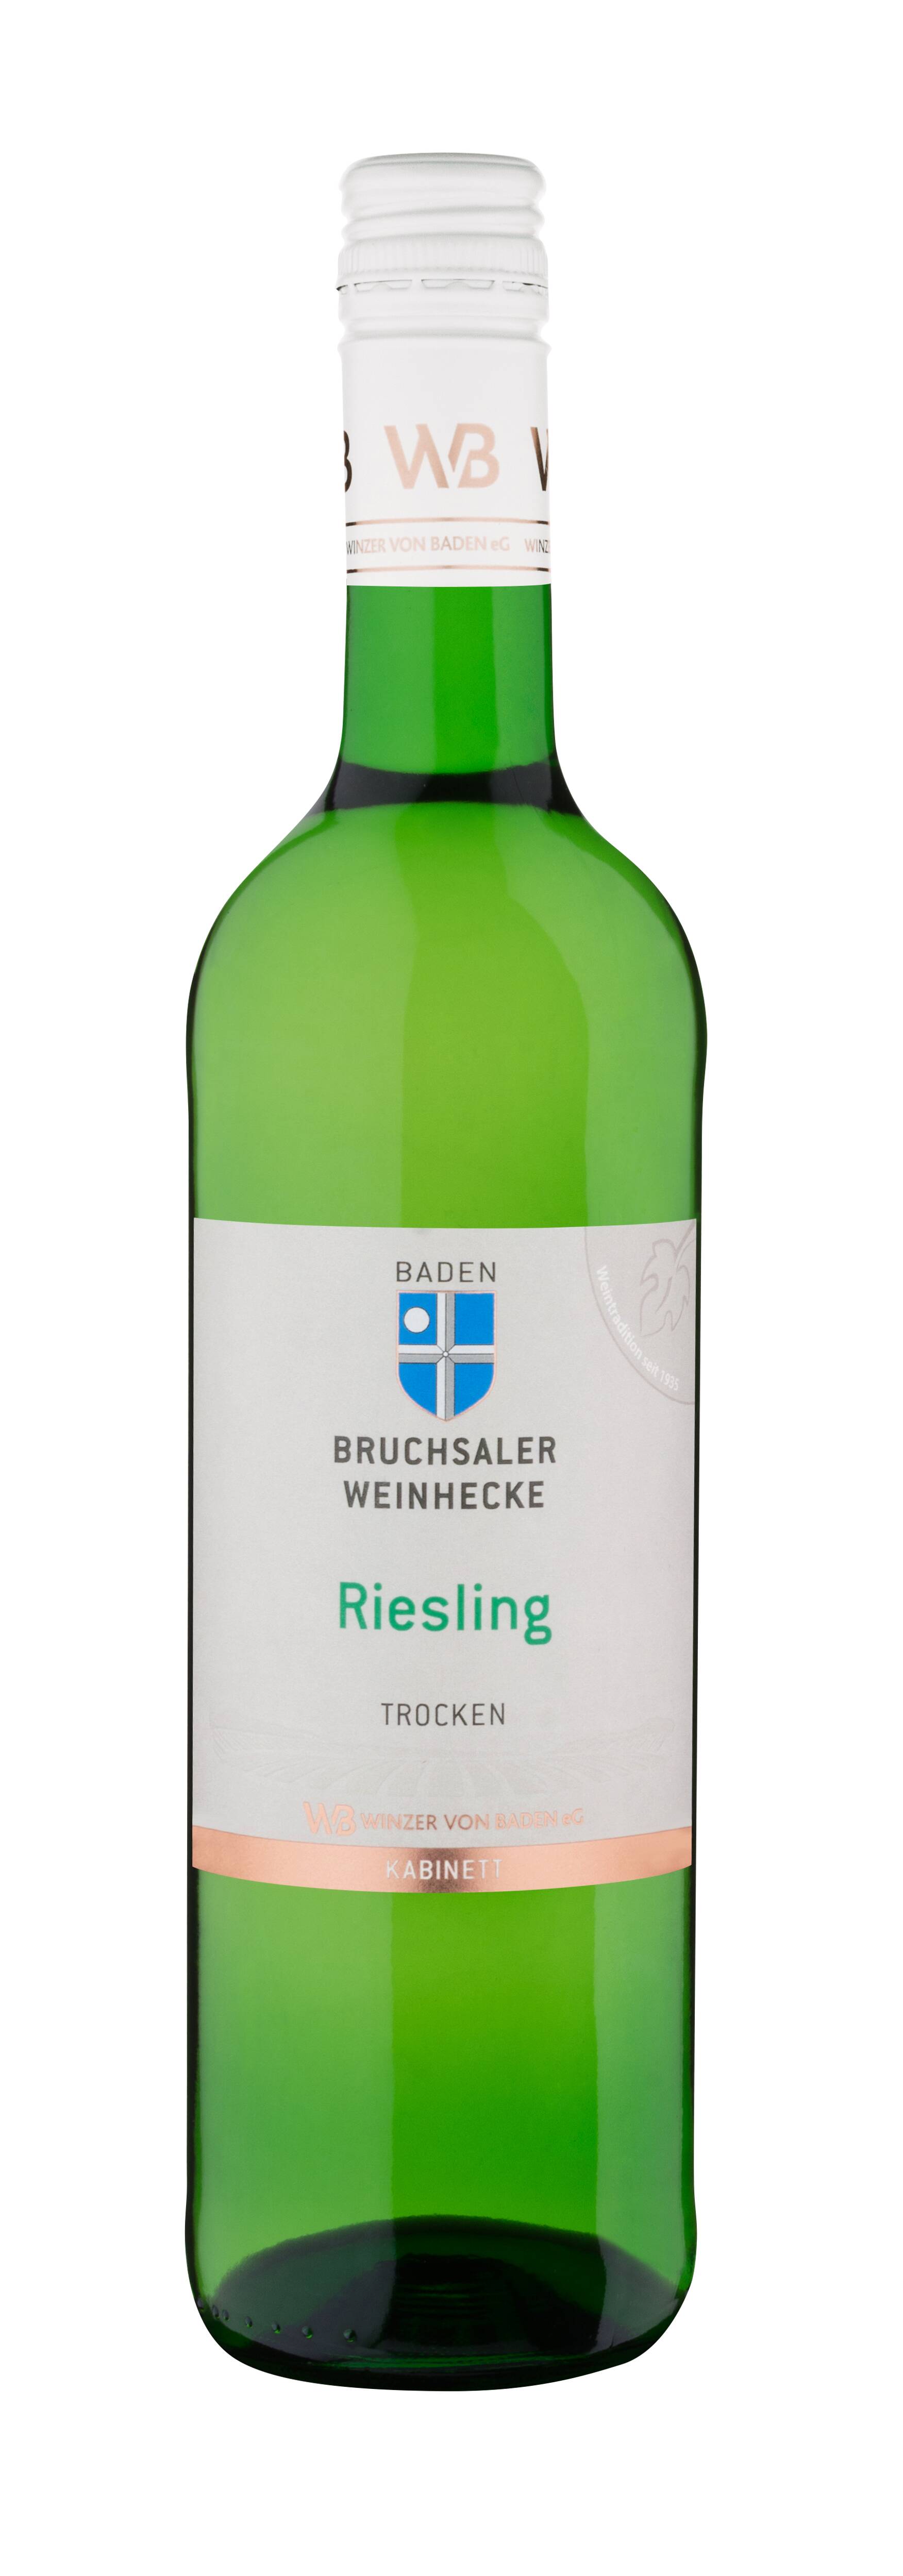 Bruchsaler Weinhecke Riesling